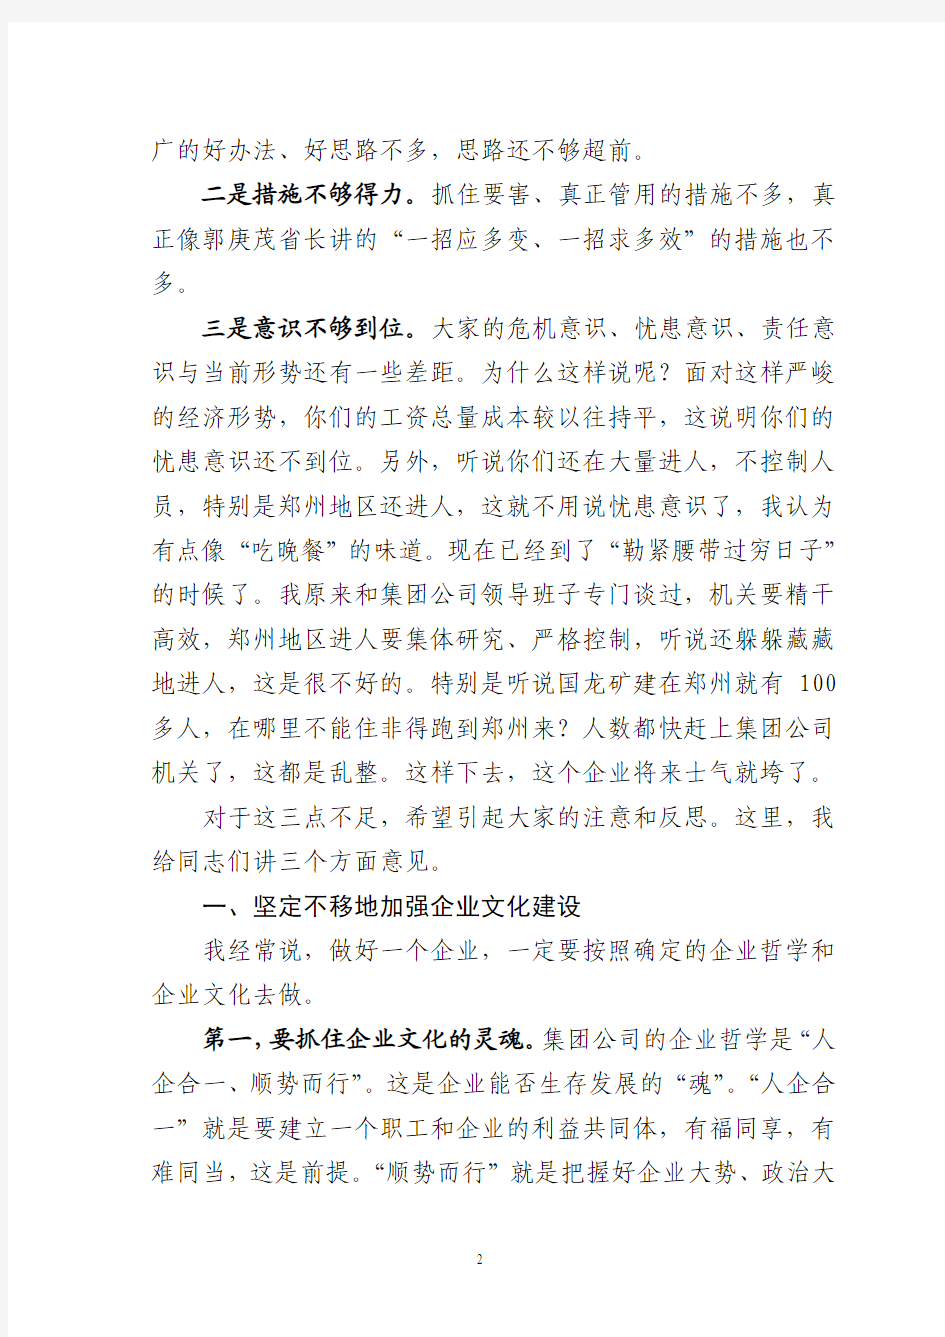 陈雪枫副省长在河南煤化集团调研2012年1至5月份经济运行情况座谈会上的讲话(20120606)[1]